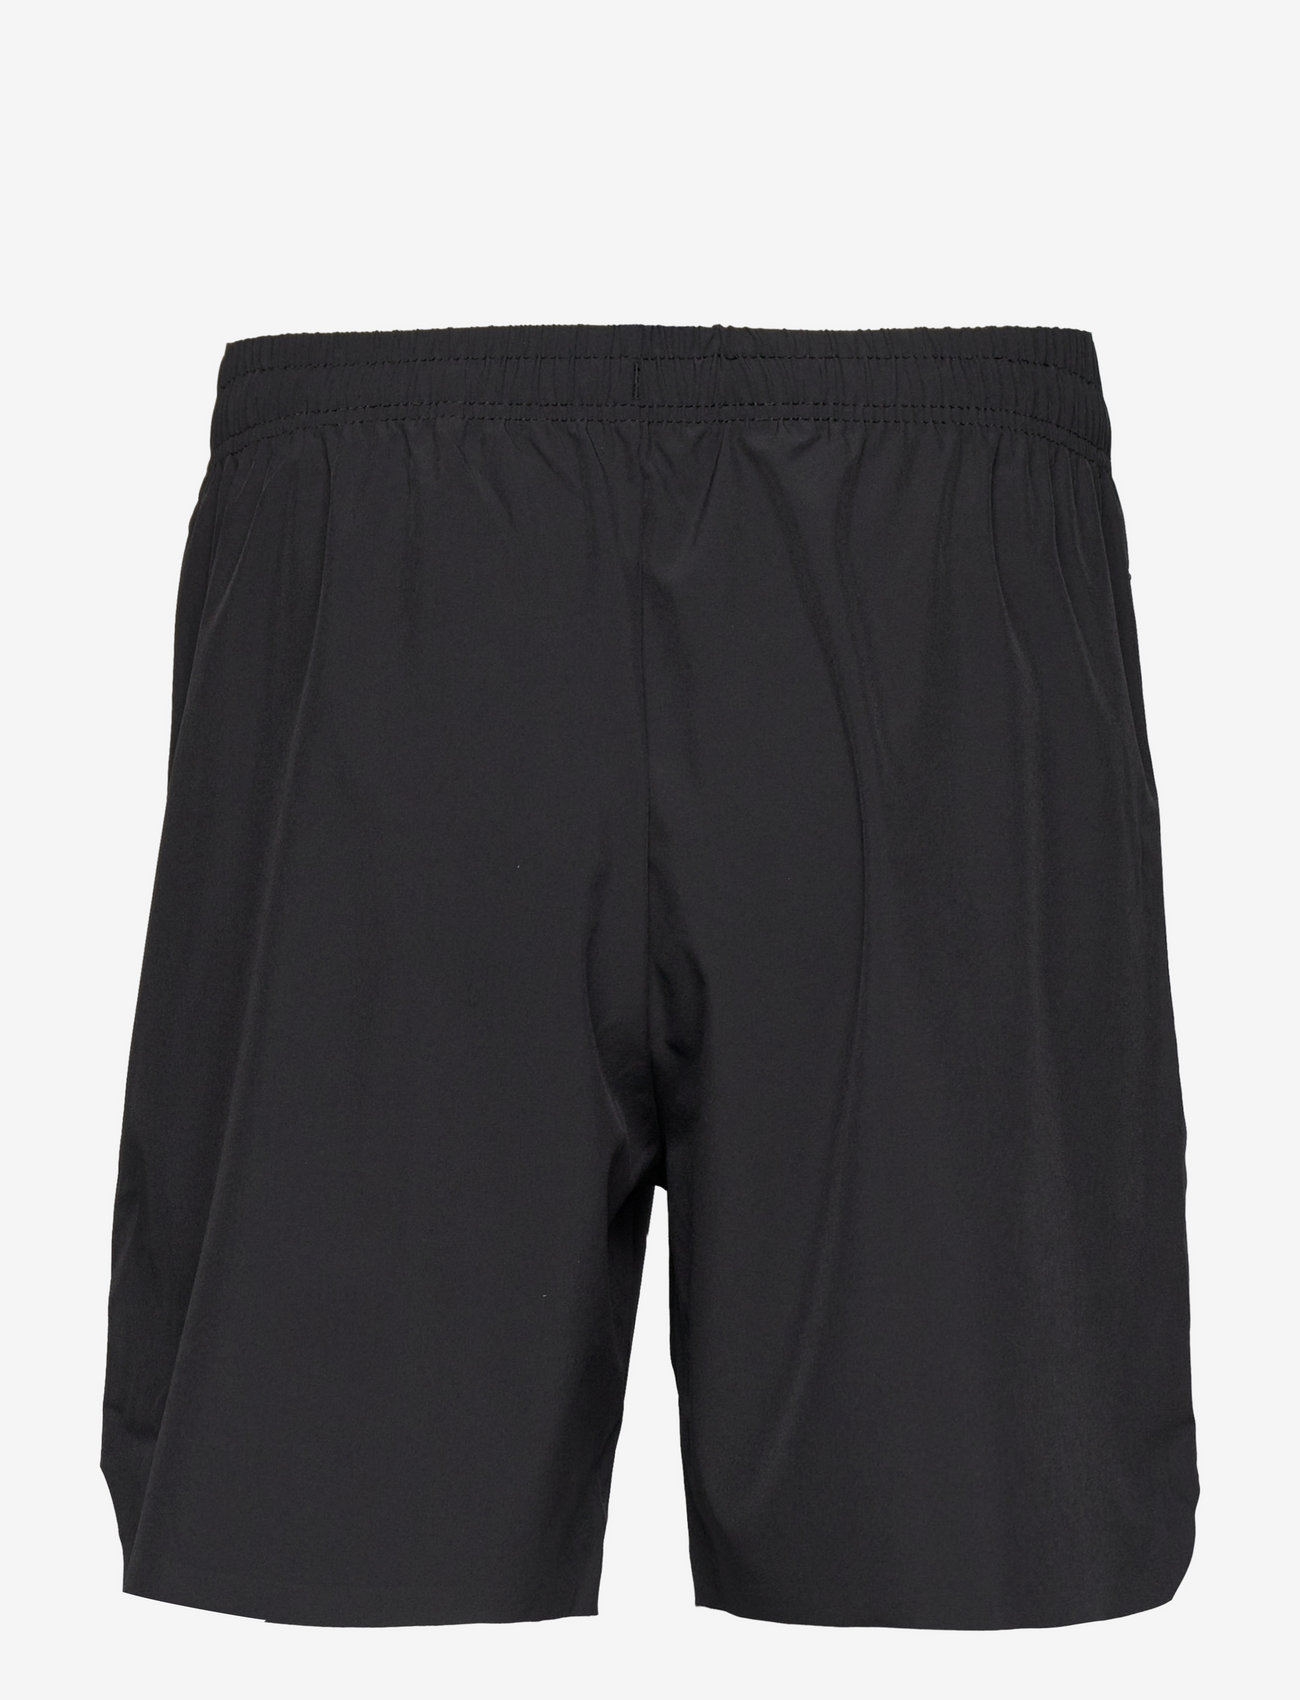 Virtus - Spier M Shorts - madalaimad hinnad - black - 1